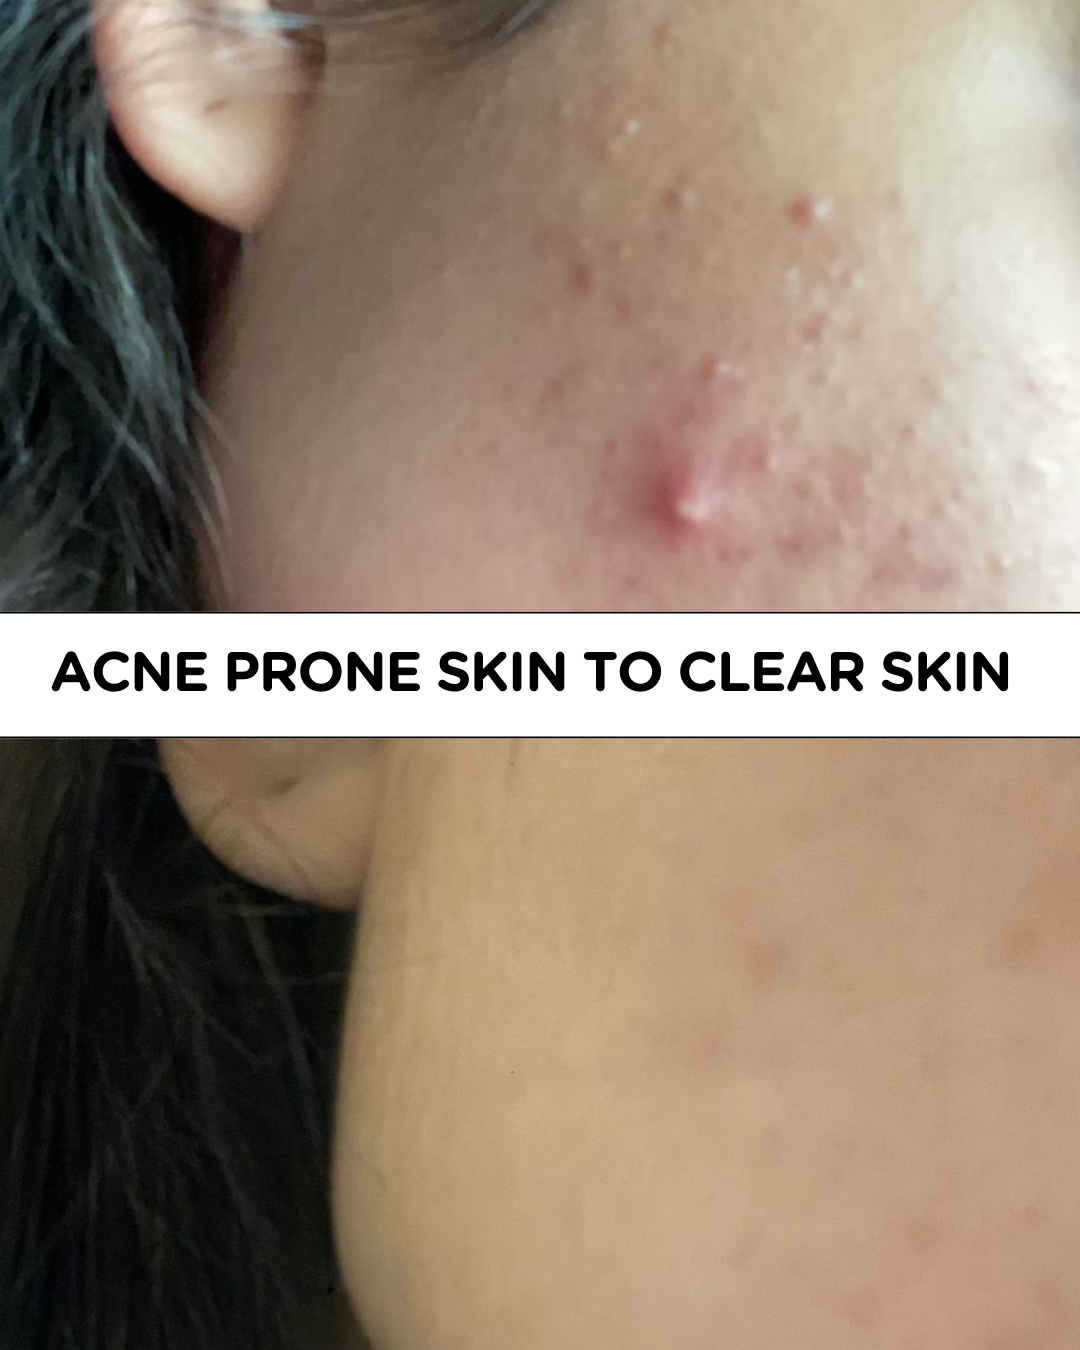 Acne prone skin to clear skin